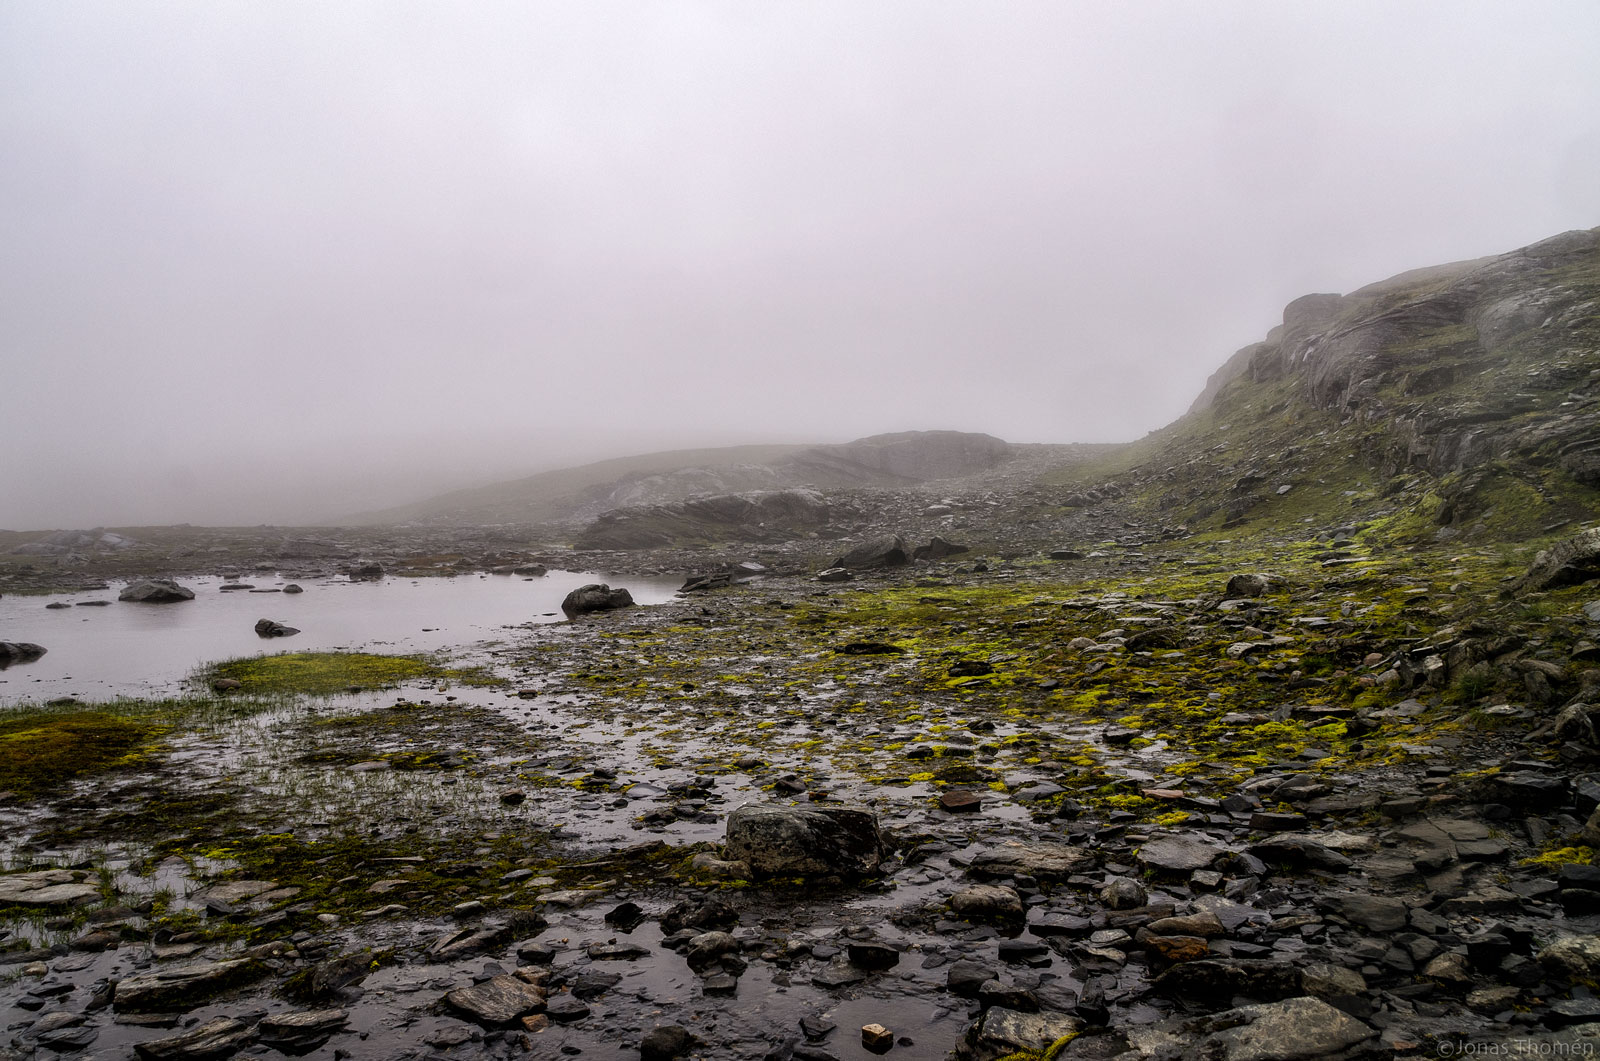 Dimma på kalfjället, Jämtlandstriangeln